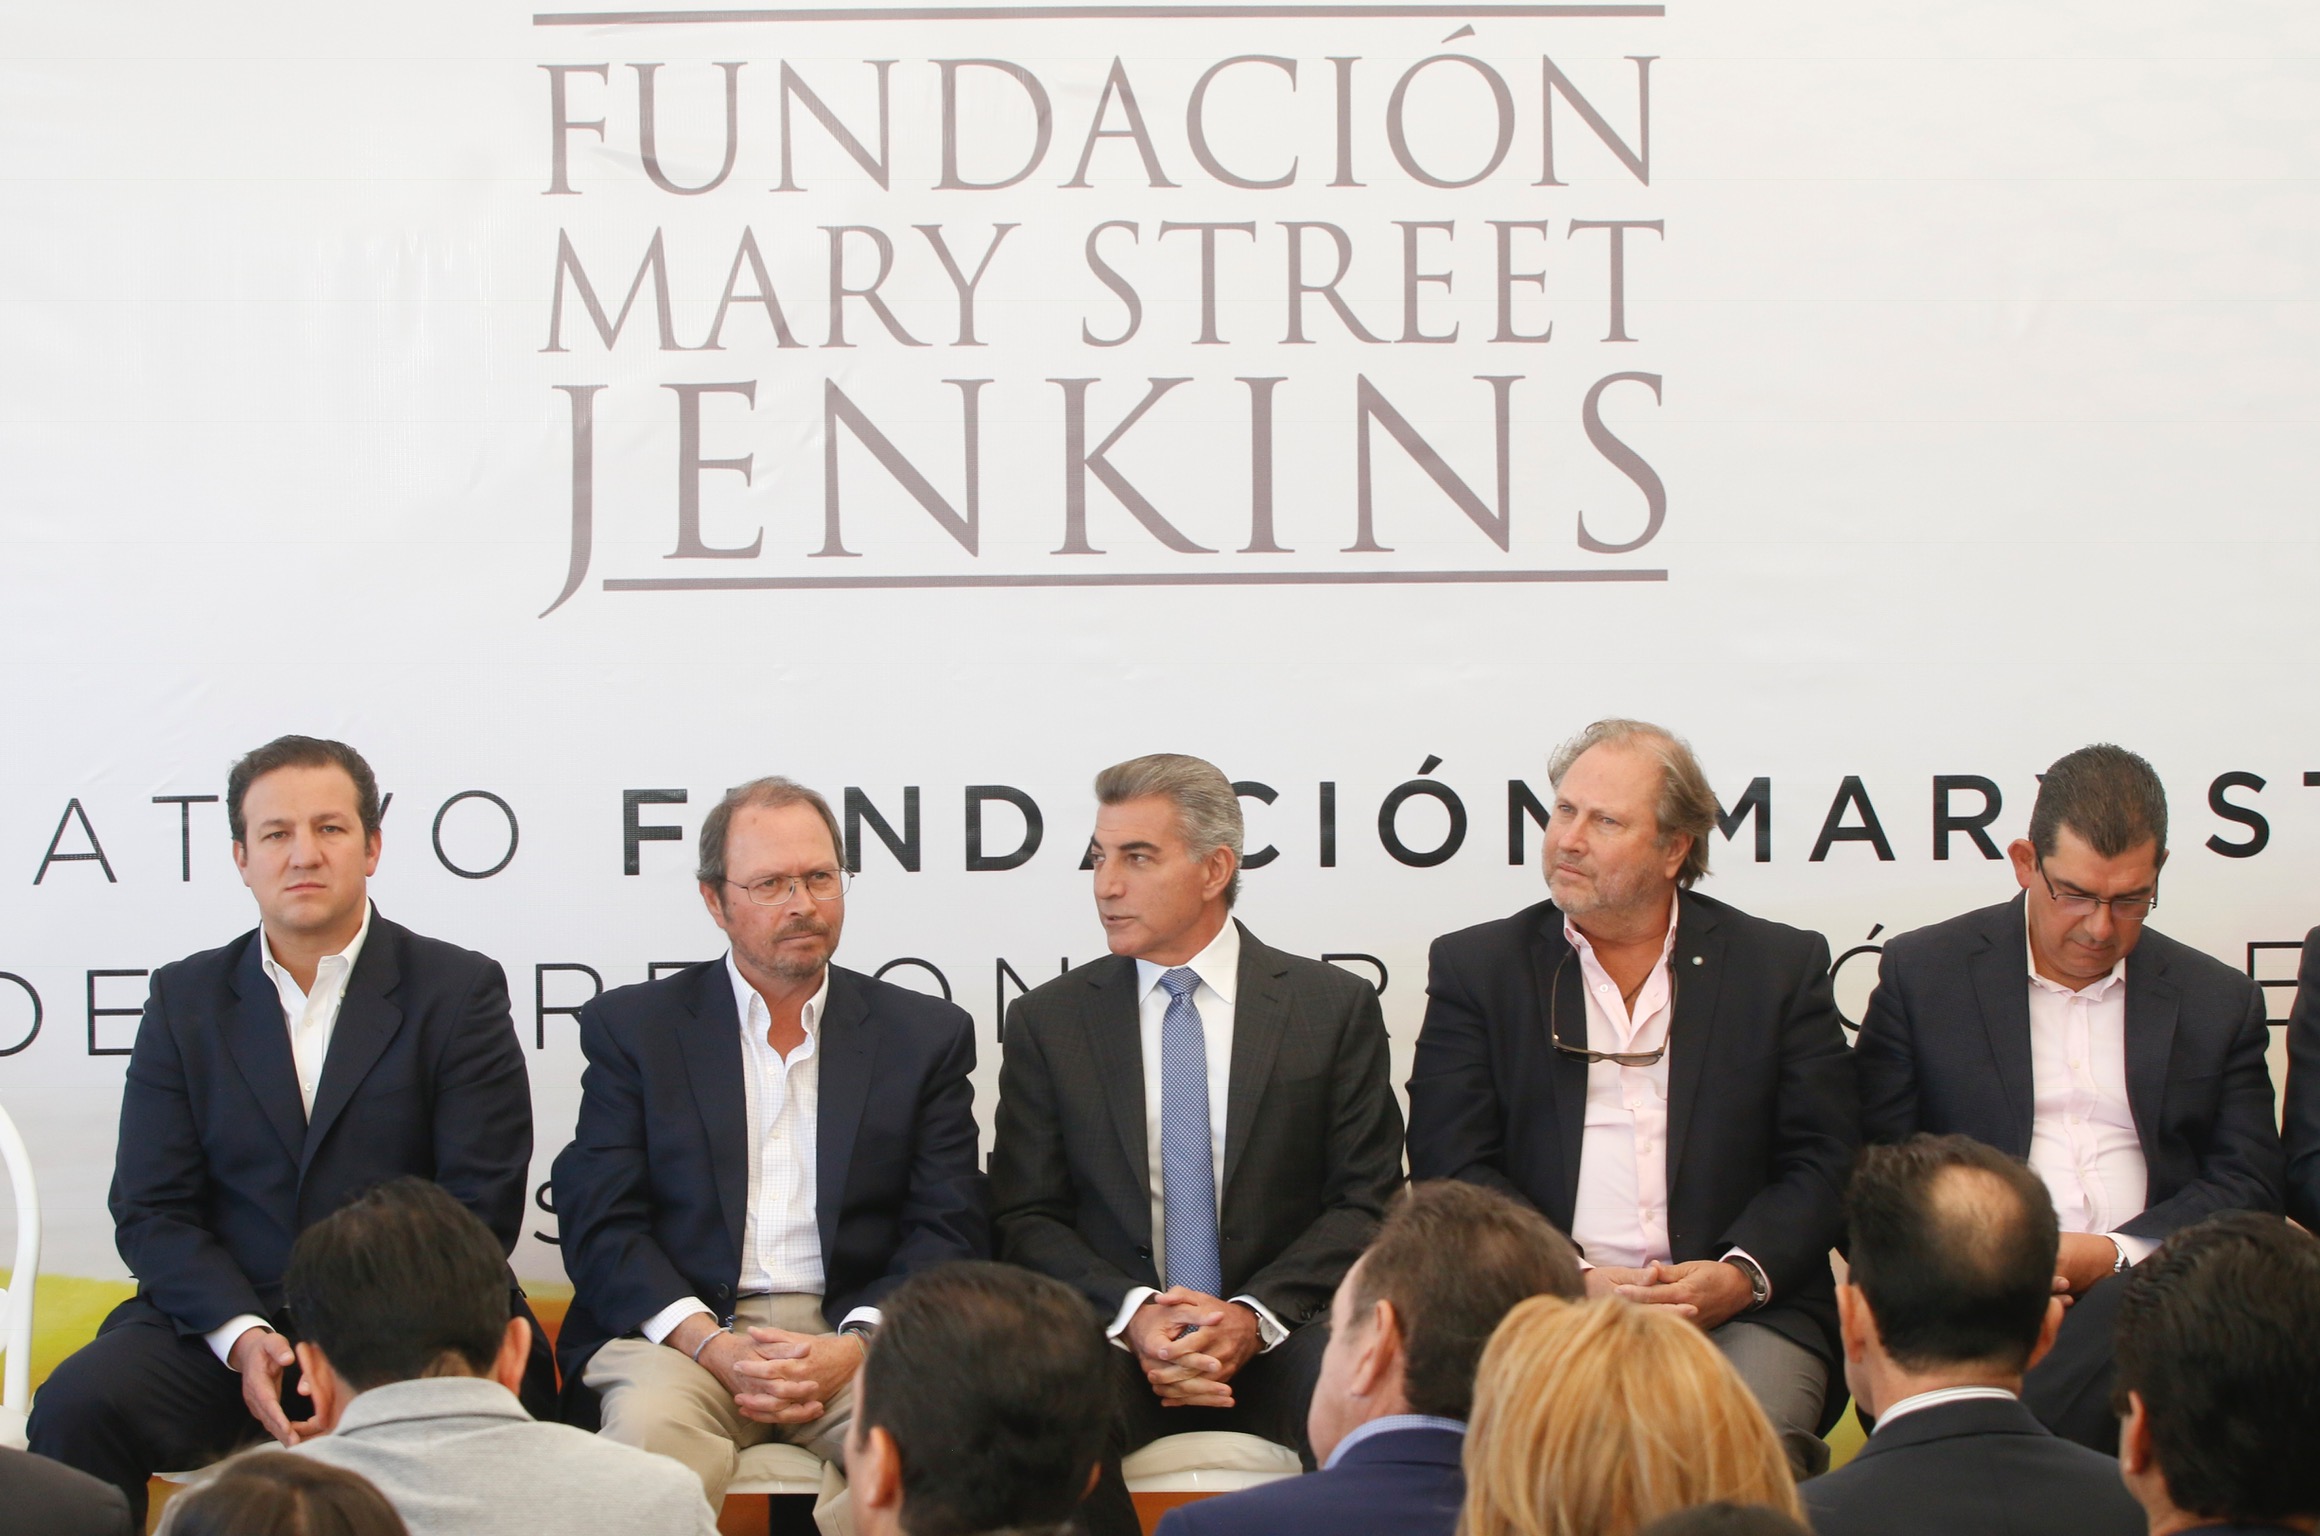 Litigio de Fundación Mary Street Jenkins no está resuelto: Miguel Barbosa